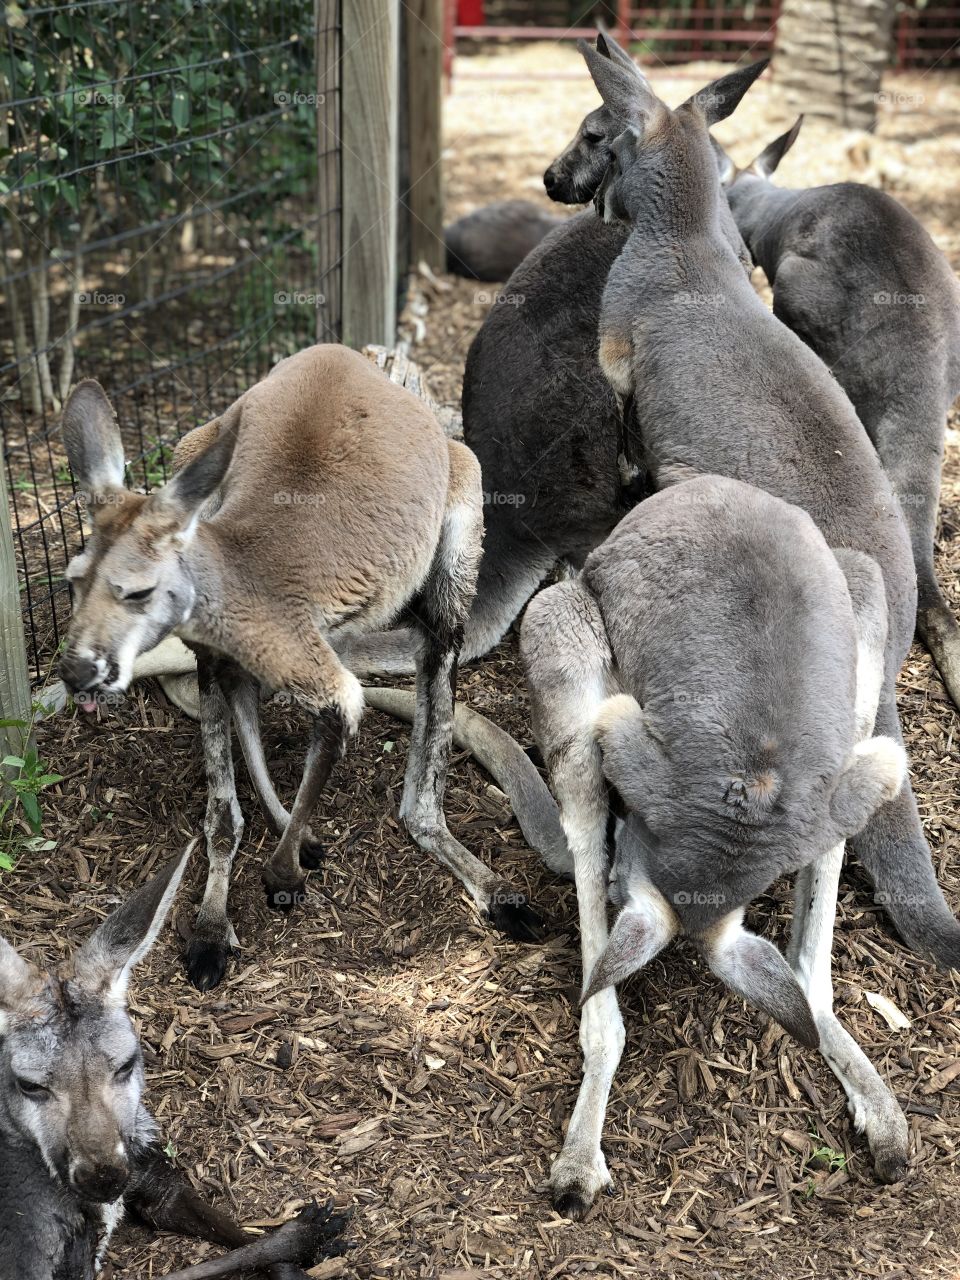 Kangaroos hanging out being kangaroos 